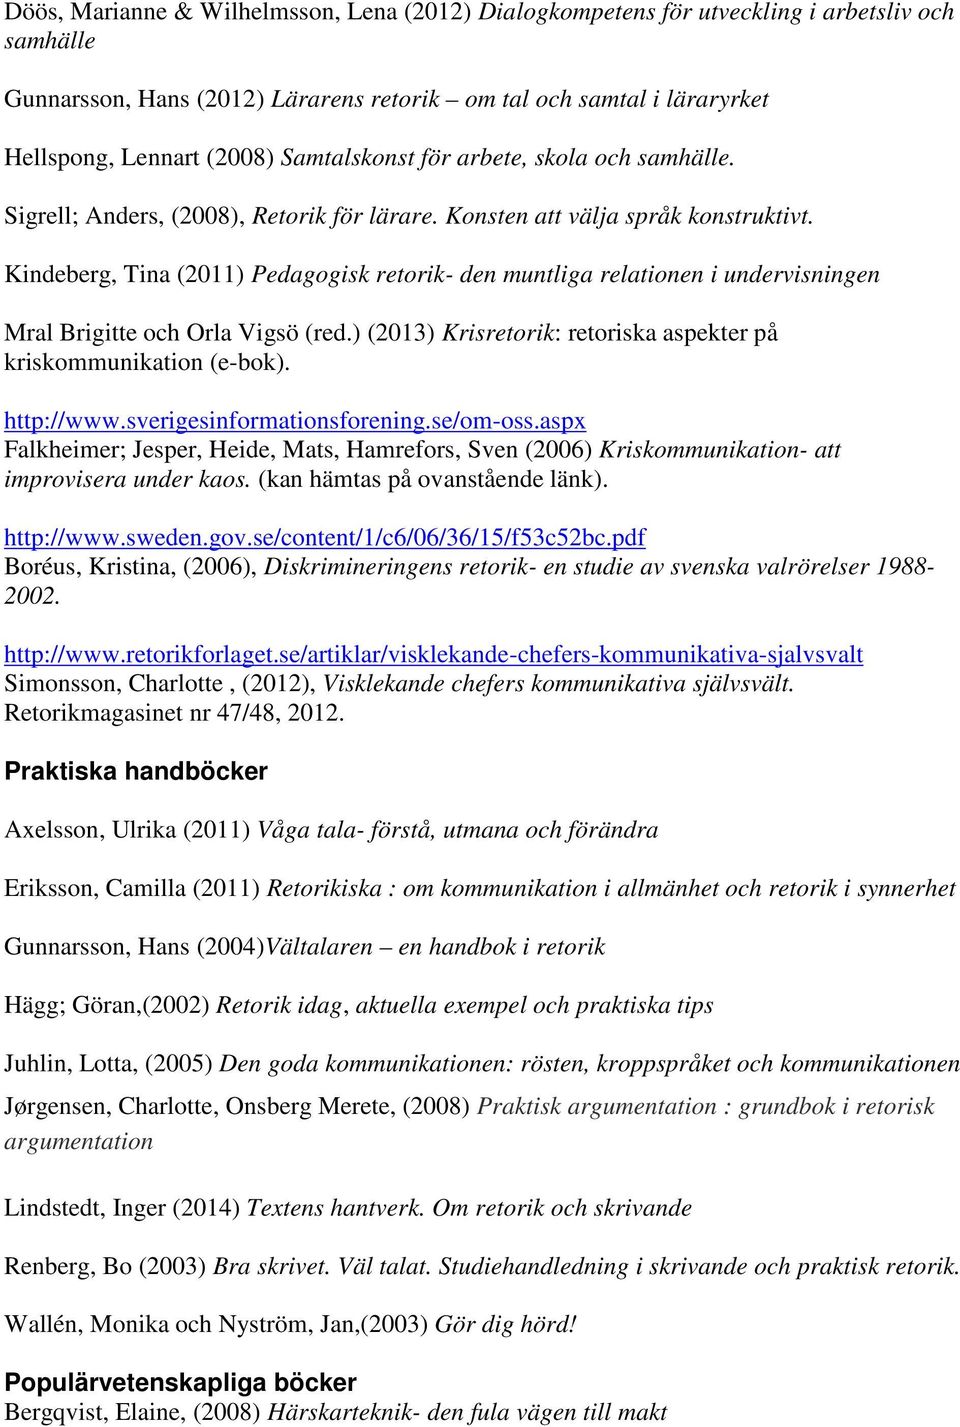 Kindeberg, Tina (2011) Pedagogisk retorik- den muntliga relationen i undervisningen Mral Brigitte och Orla Vigsö (red.) (2013) Krisretorik: retoriska aspekter på kriskommunikation (e-bok). http://www.